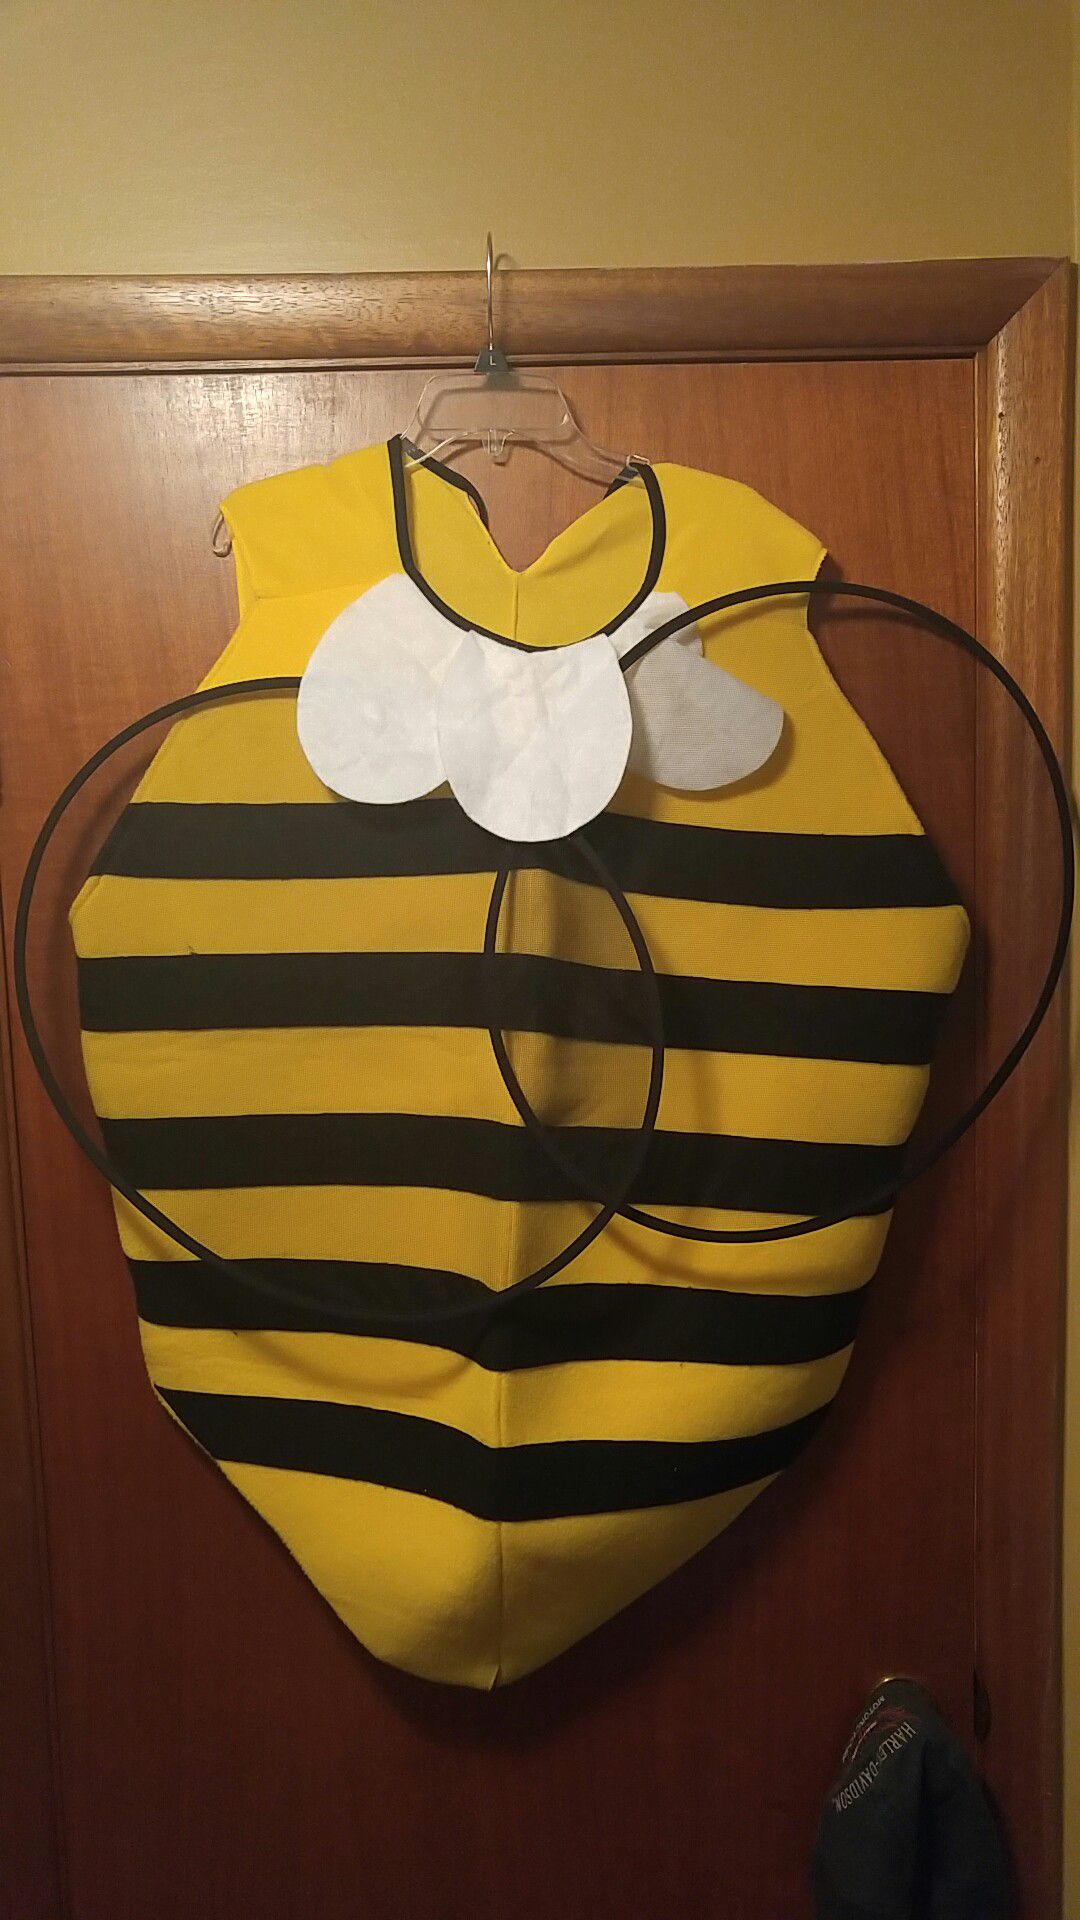 Bumble Bee Halloween Costume